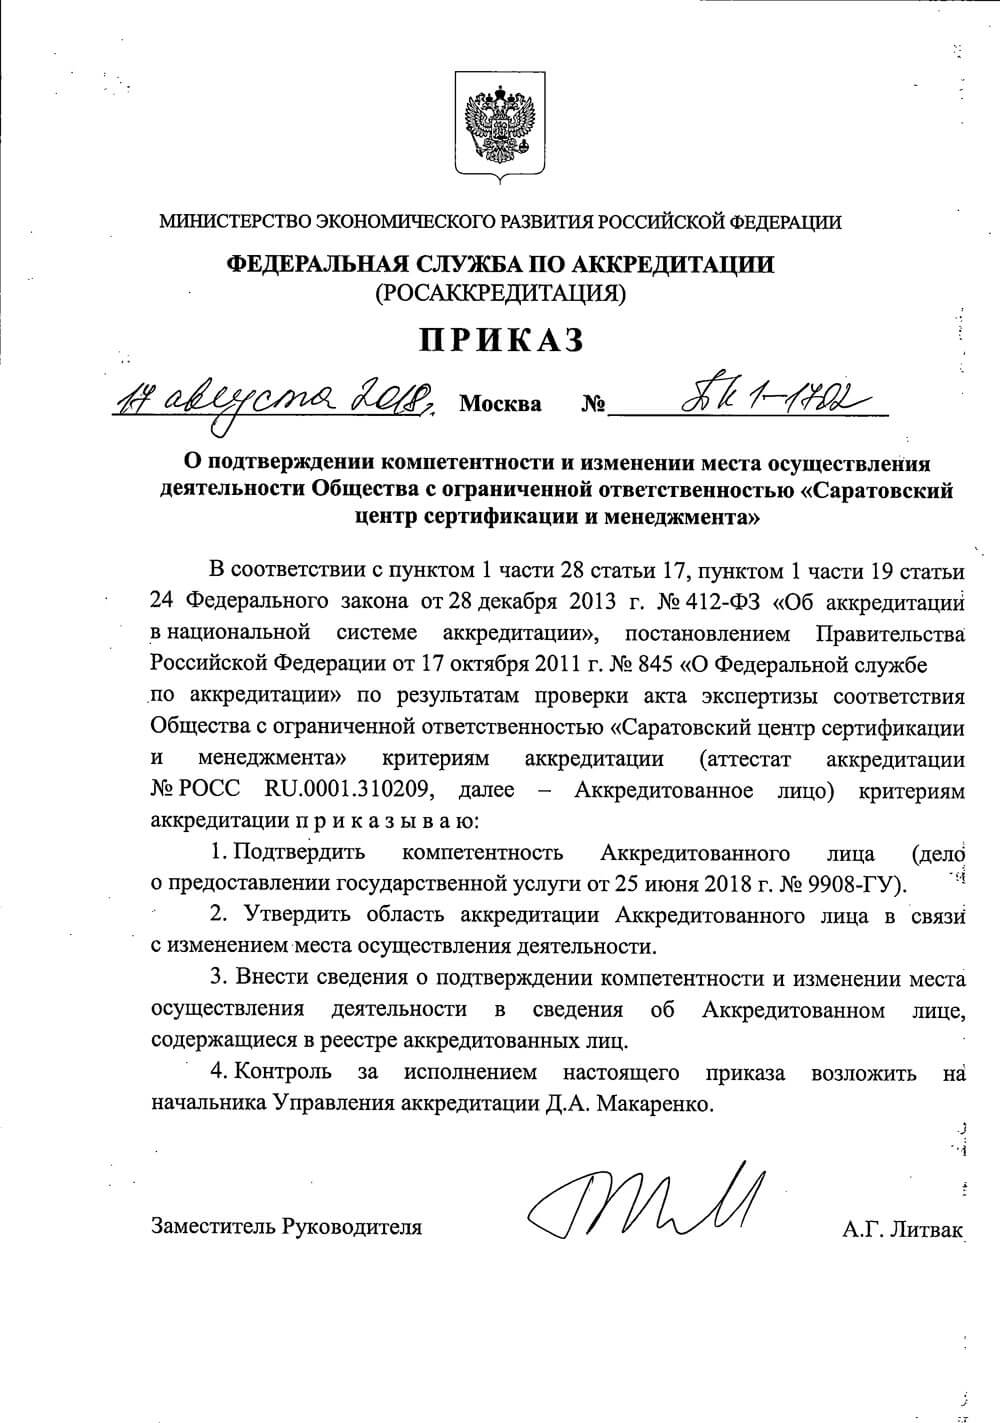 Сертификат ООО «Саратовский ЦСМ»